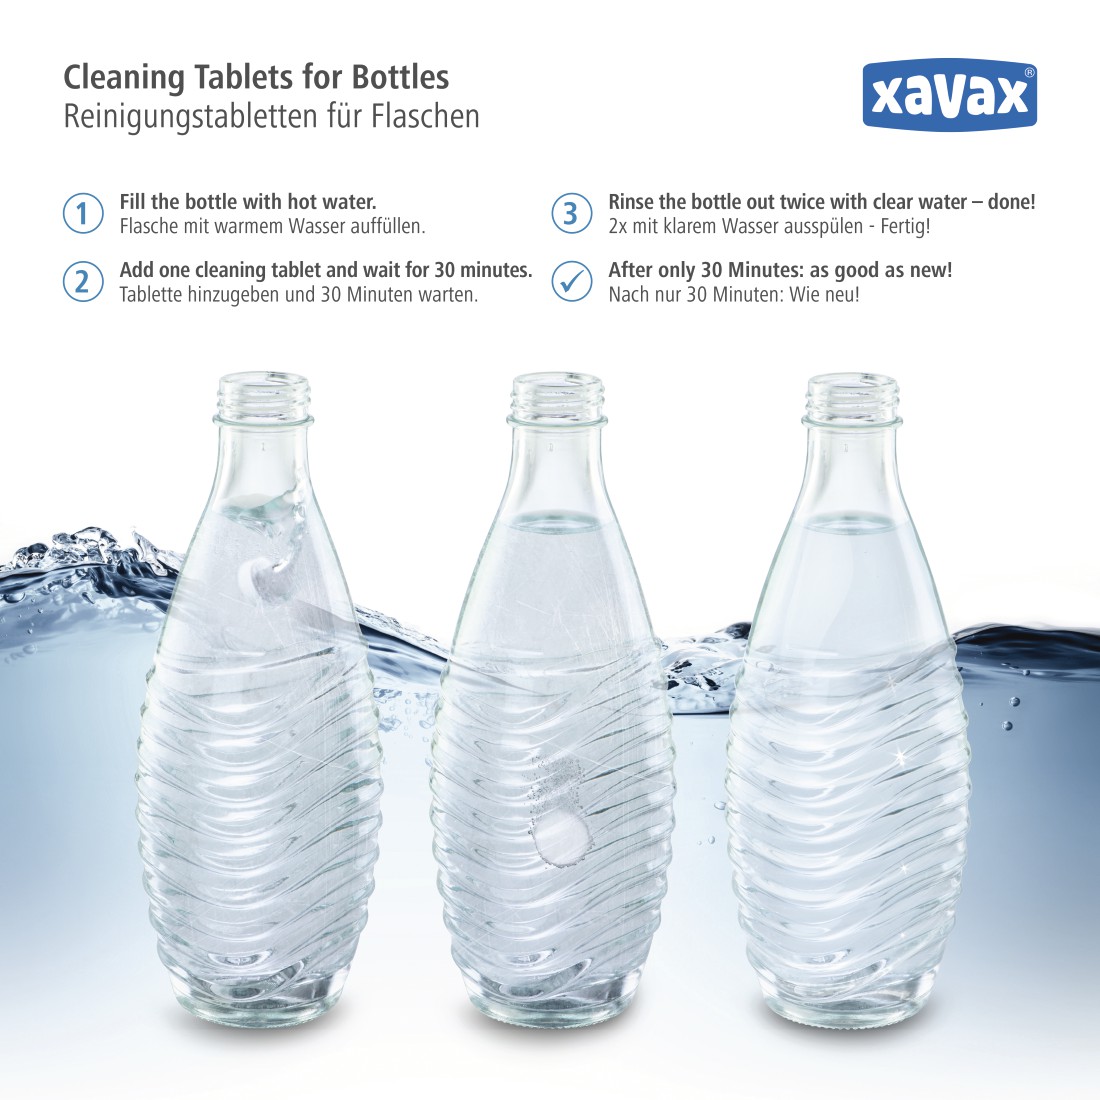 awx Druckfähige Anwendung - Xavax, Reinigungstabletten für Flaschen, 20 Stück